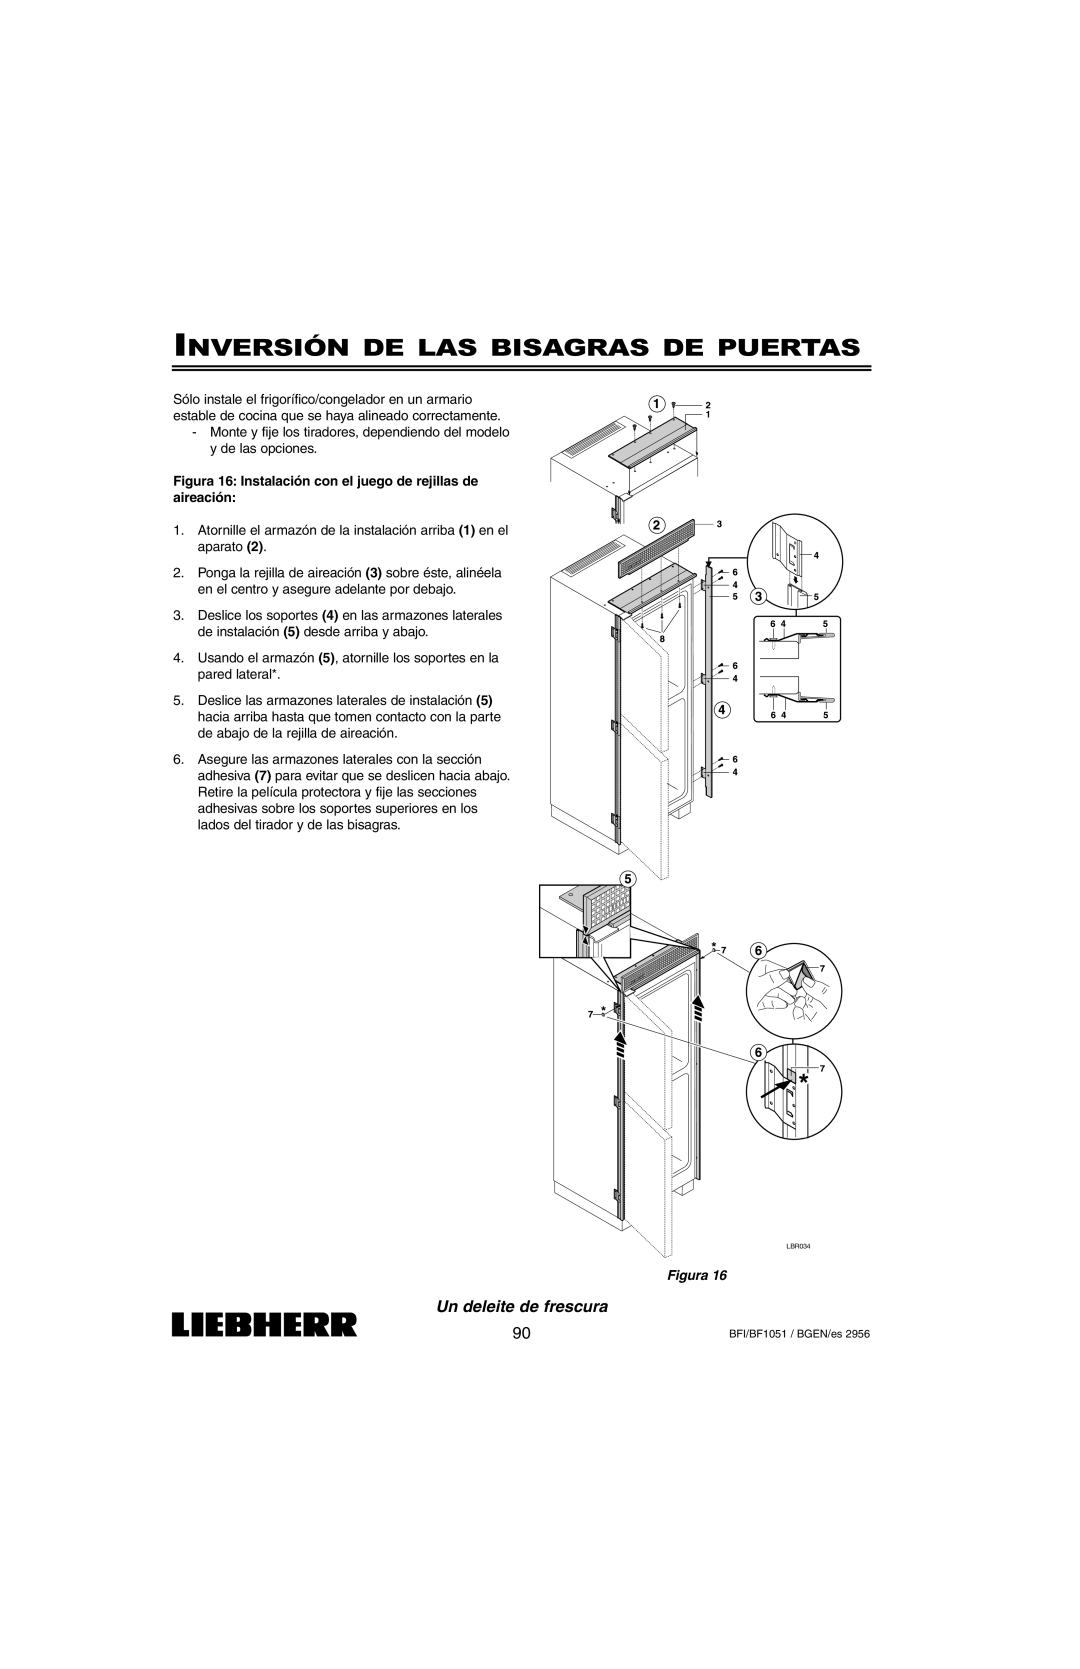 Liebherr BFI1051, BF1051 installation instructions Inversión De Las Bisagras De Puertas, Un deleite de frescura, Figura 